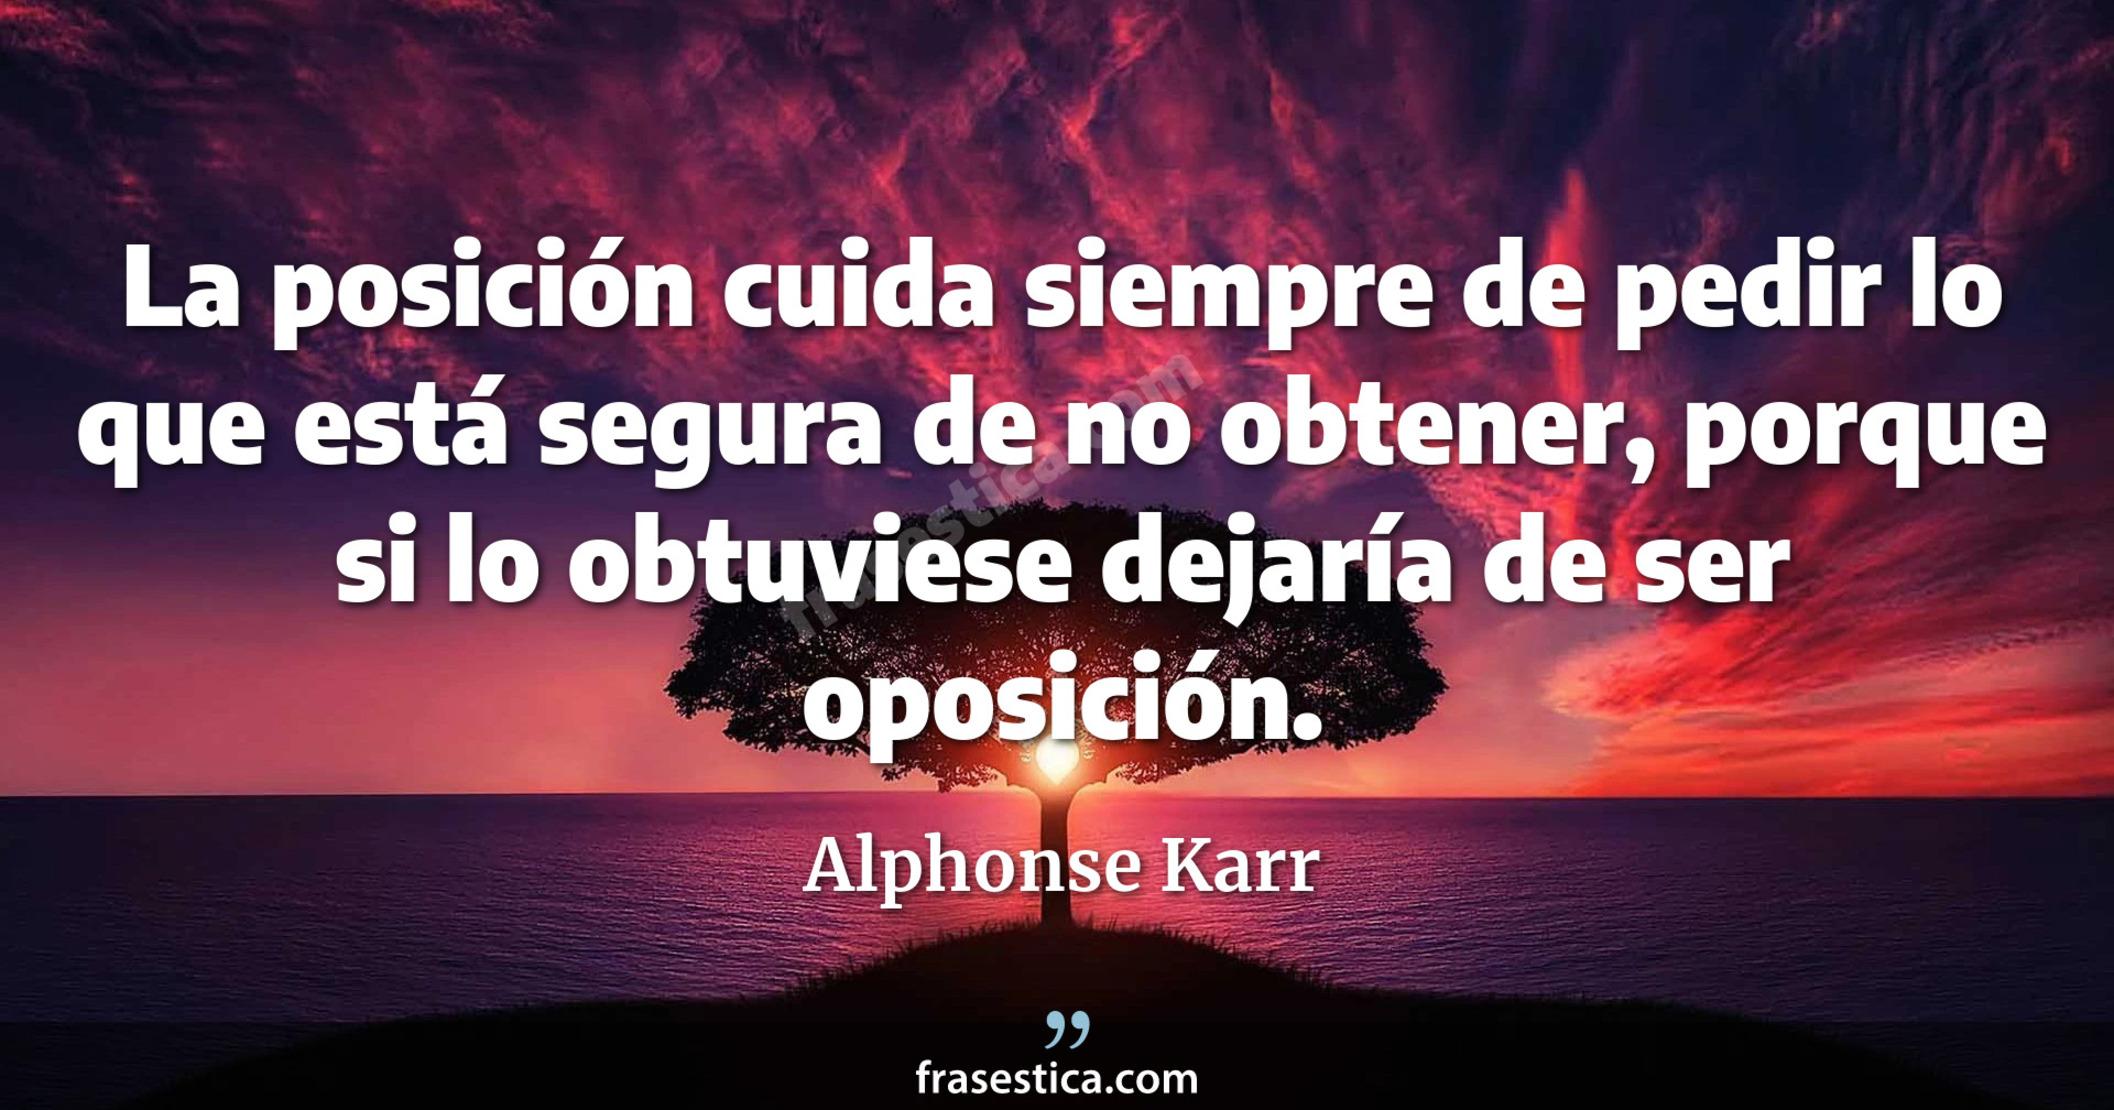 La posición cuida siempre de pedir lo que está segura de no obtener, porque si lo obtuviese dejaría de ser oposición. - Alphonse Karr